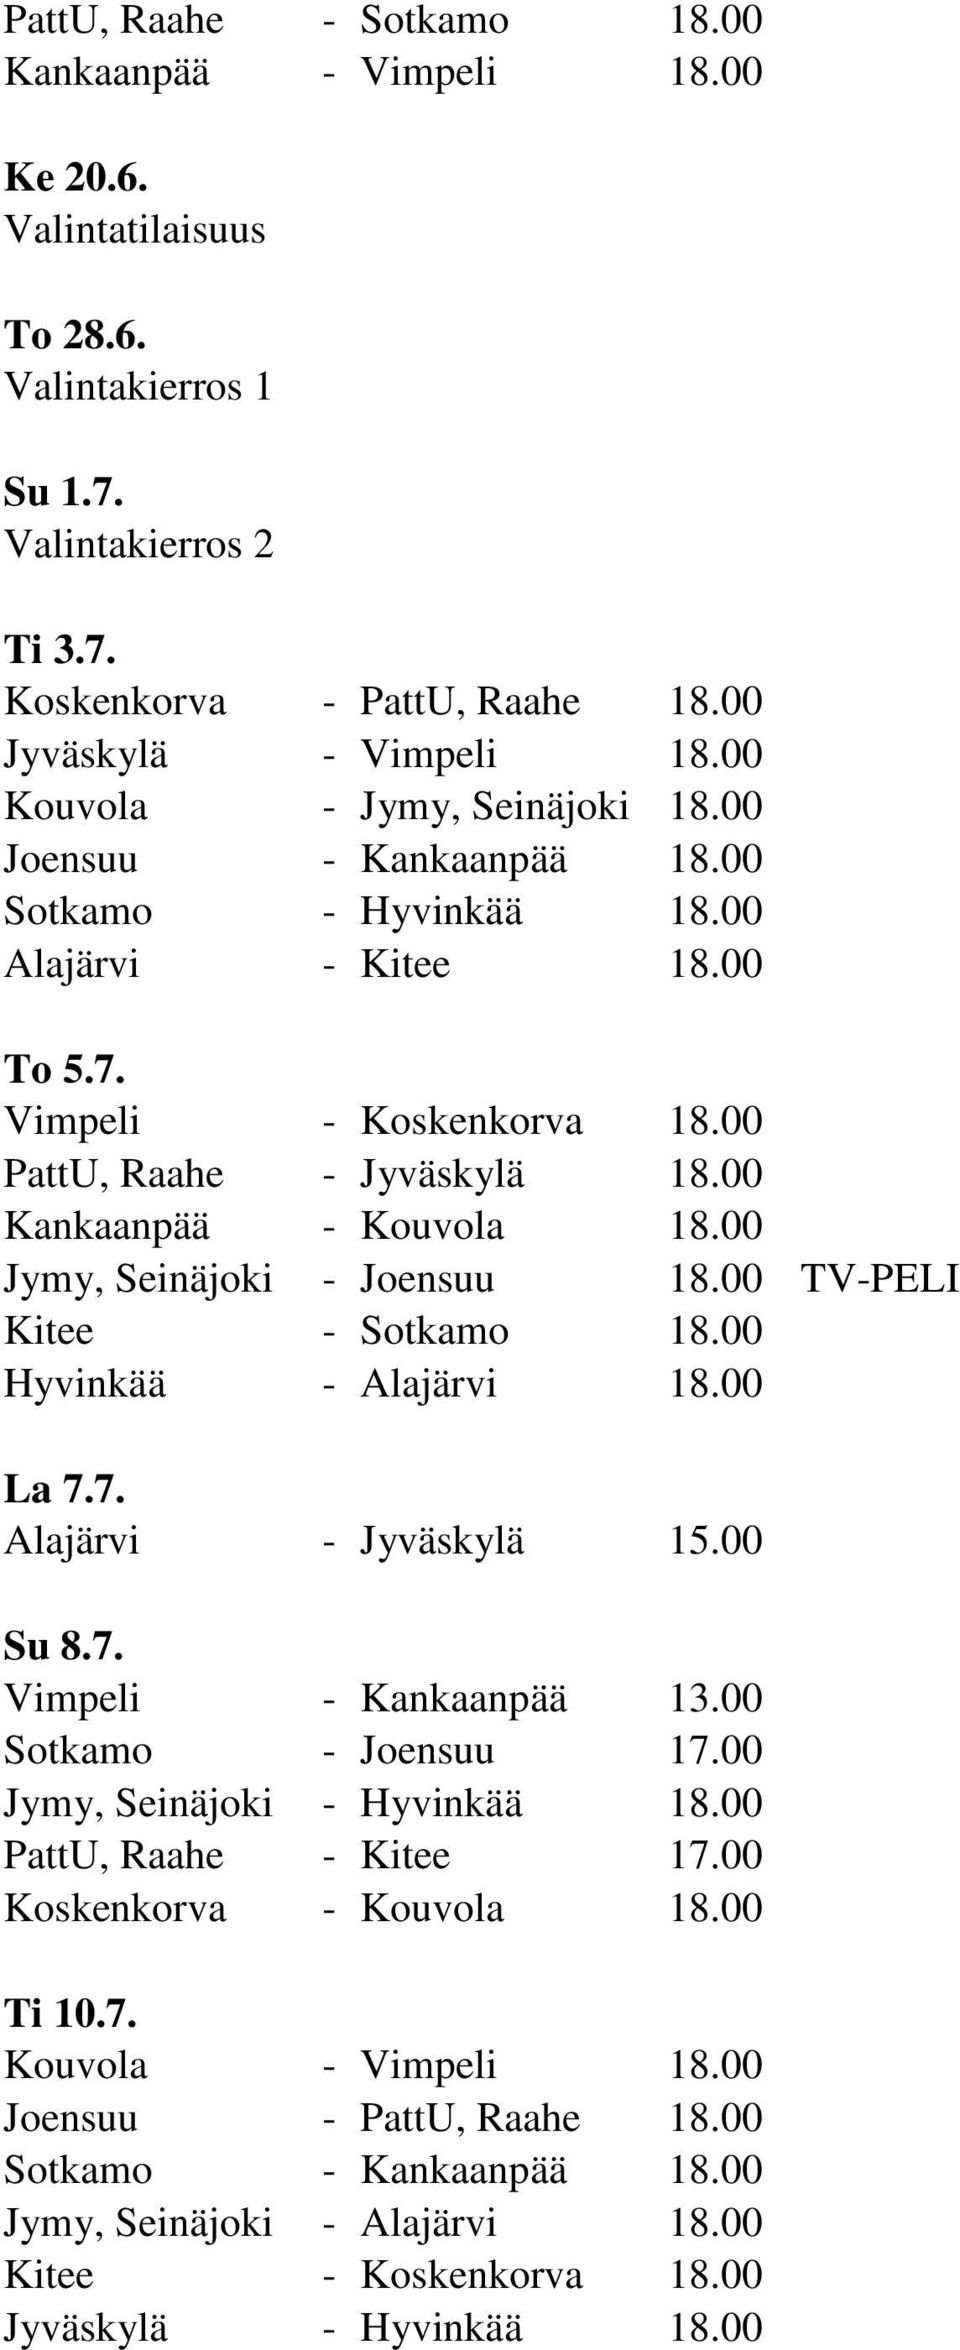 00 Kankaanpää - Kouvola 18.00 Jymy, Seinäjoki - Joensuu 18.00 TV-PELI Kitee - Sotkamo 18.00 Hyvinkää - Alajärvi 18.00 La 7.7. Alajärvi - Jyväskylä 15.00 Su 8.7. Vimpeli - Kankaanpää 13.